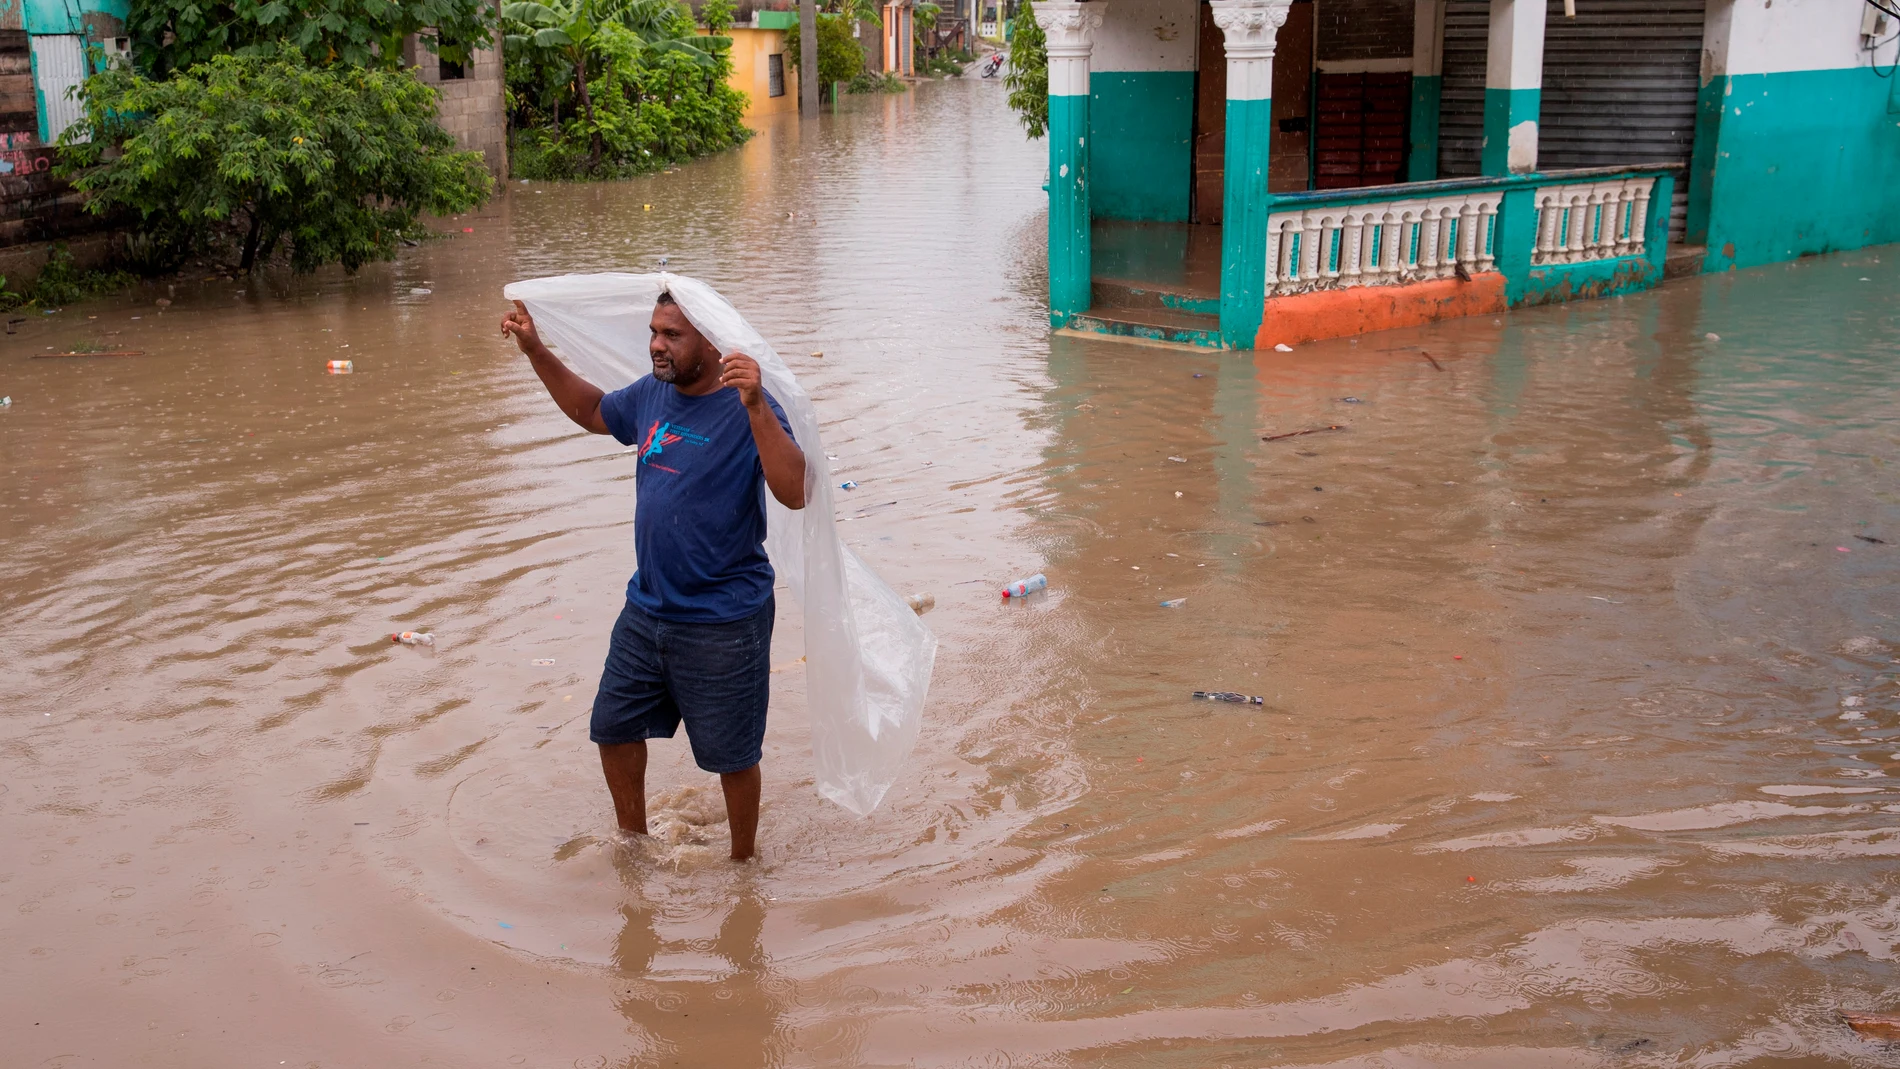 -FOTODELDIA- AME8333. SAN CRISTÓBAL (REPÚBLICA DOMINICANA), 12/08/2021.- Un hombre camina por una de las calles inundadas en el barrio Moscú tras el paso de la tormenta Fred, hoy, en San Cristóbal (República Dominicana). Un total de 580.186 usuarios quedaron sin agua y 439.263 sin electricidad por los efectos de Fred sobre la República Dominicana, donde ayer como tormenta tropical arrojó fuertes lluvias, según el reporte ofrecido este jueves por el Centro de Operaciones de Emergencias (COE). EFE/ Orlando Barría